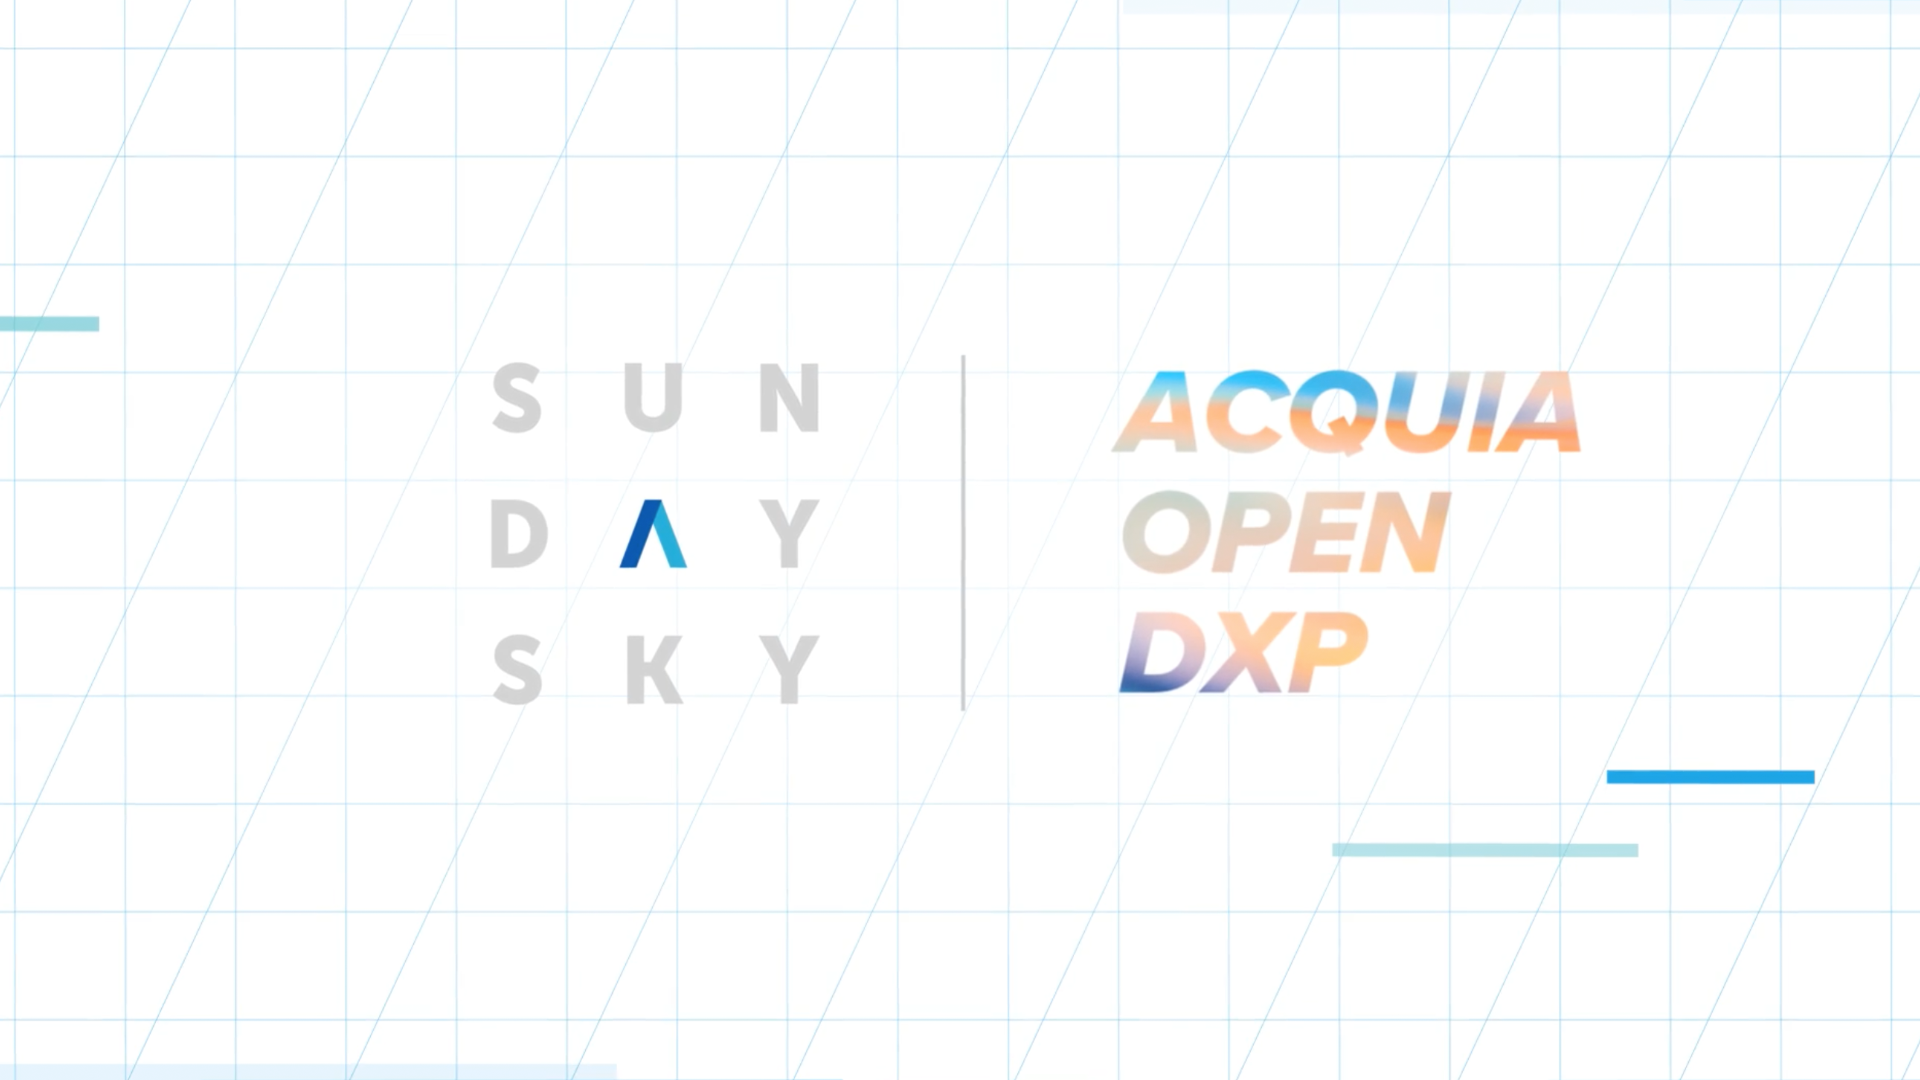 SundaySky and Acquia DXP platform partnership